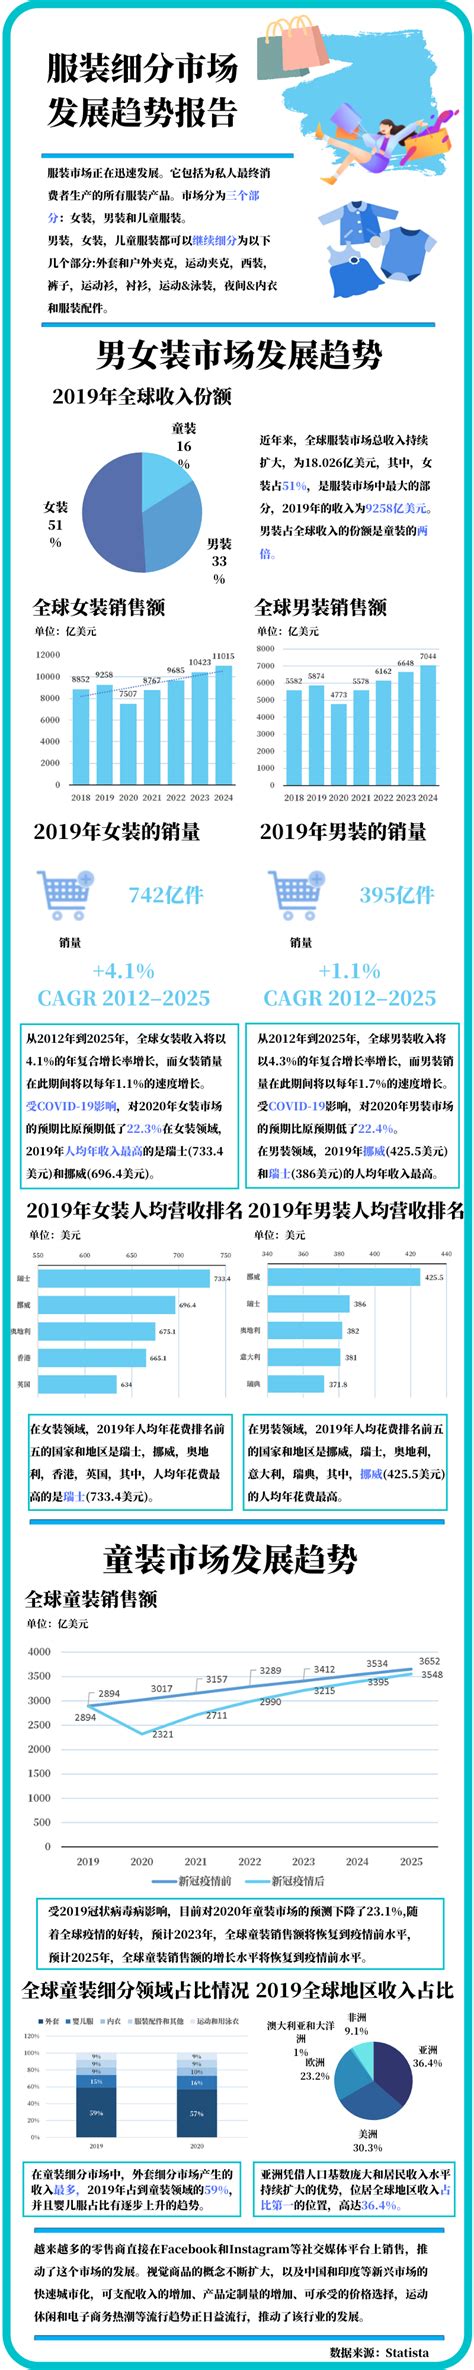 针织类服装市场分析报告_2021-2027年中国针织类服装行业深度研究与市场年度调研报告_中国产业研究报告网